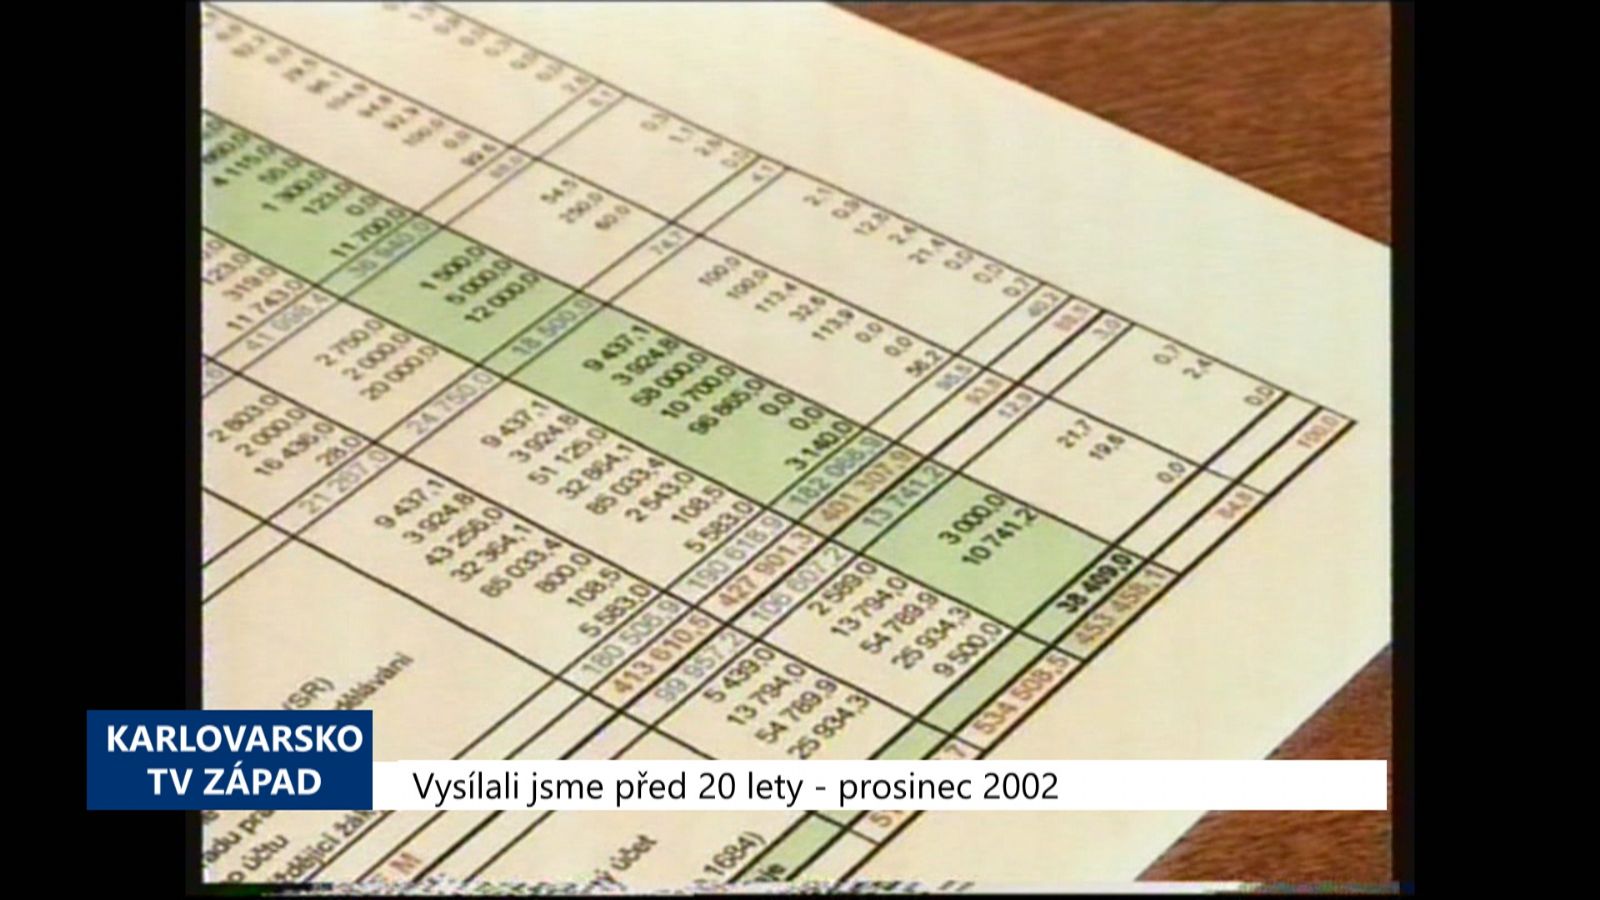 2002 – Sokolov: V rozpočtu výrazně narostou mandatorní výdaje (TV Západ)